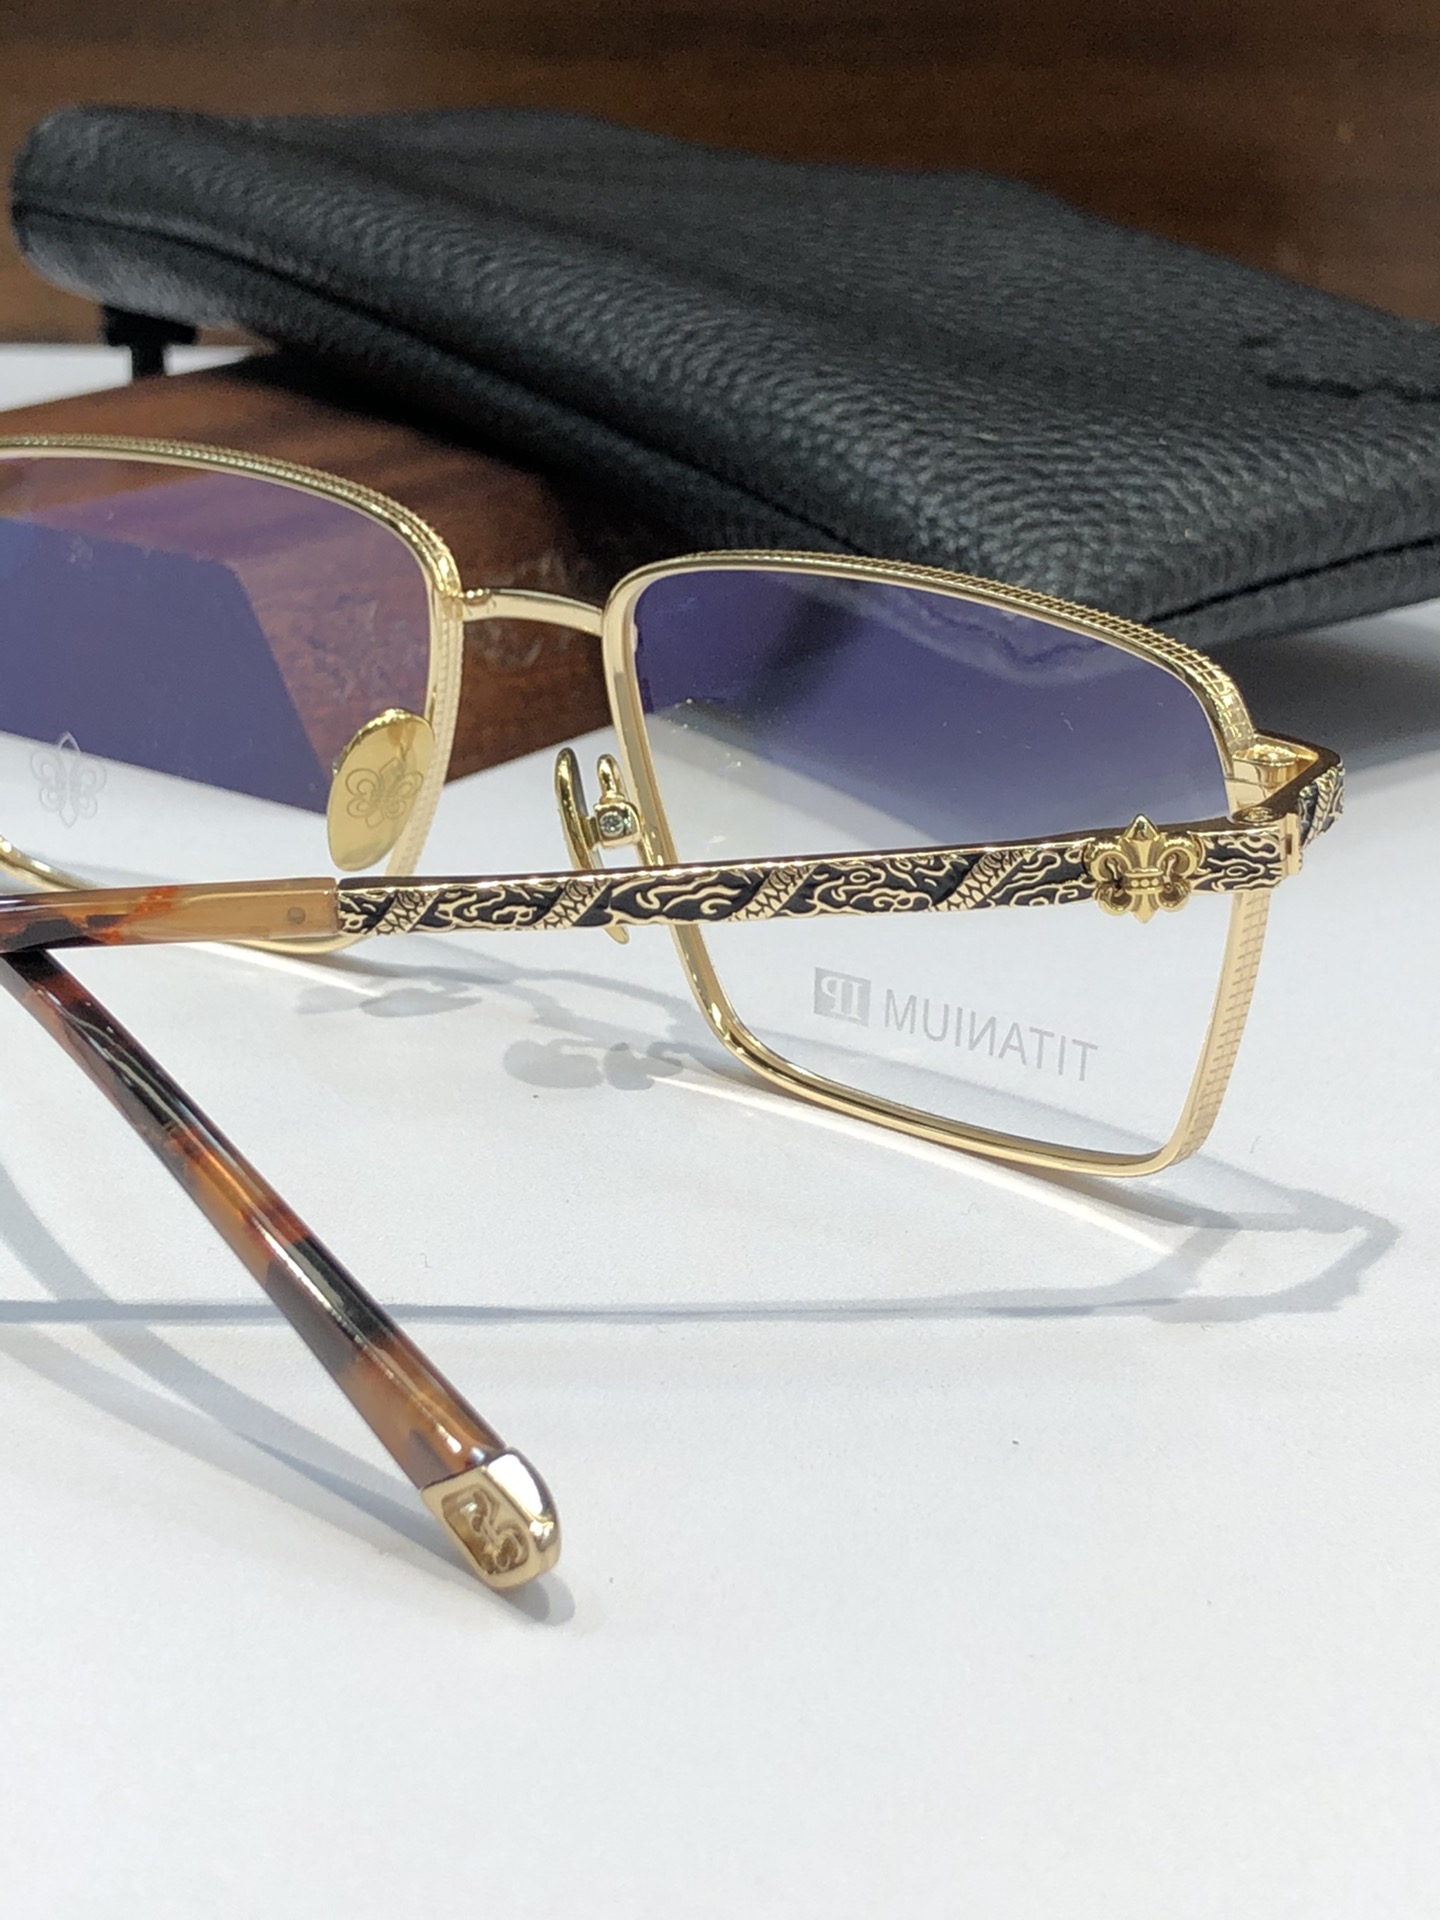 高档纯钛眼镜️CHROMEHEART方正百搭款厚边设计质感满分CH8270SIZE:55-17-149